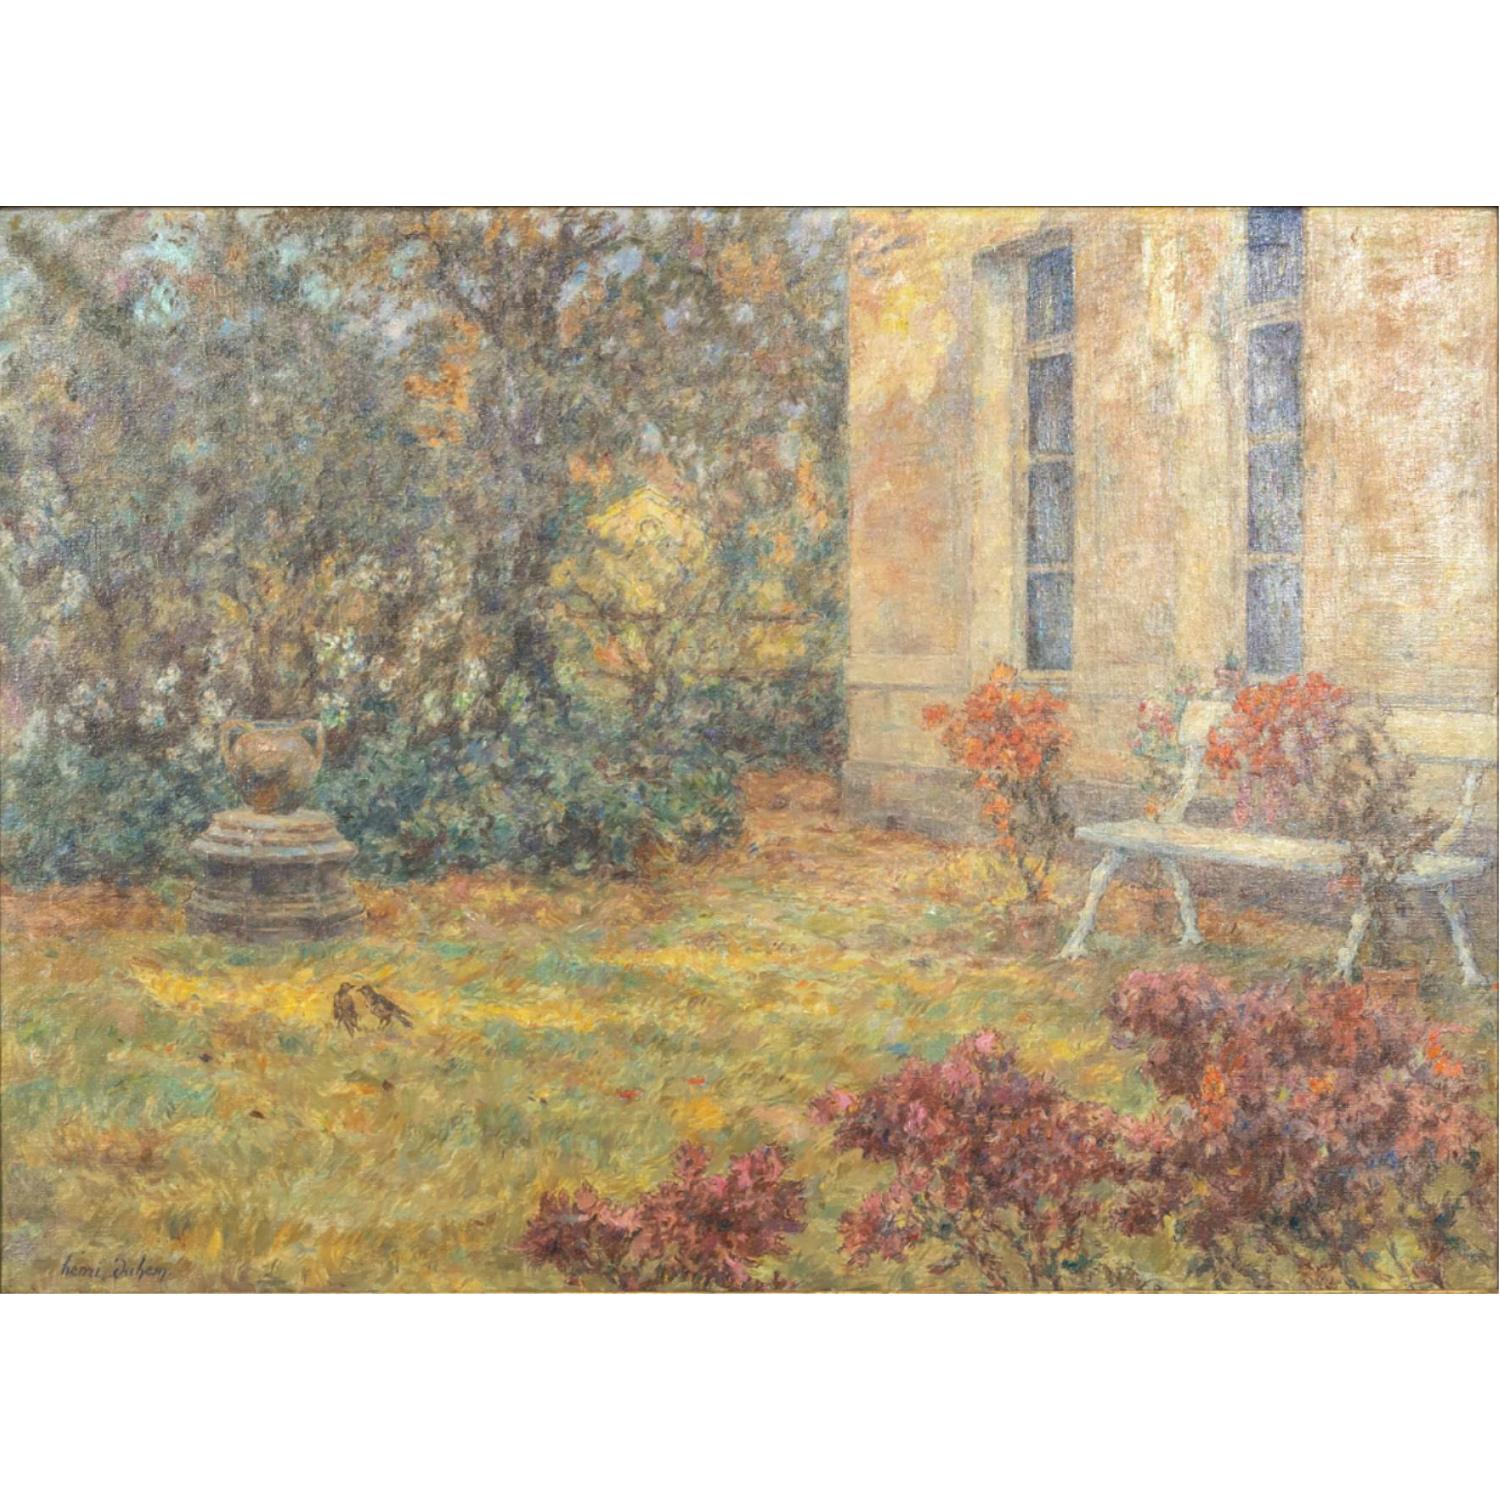 Une magnifique huile sur toile impressionniste française signée et datée par l'artiste français Henri Duhem, vers le début des années 1900. Ce paysage de jardin serein représente une vue de la maison et du jardin de l'artiste à la fin de l'été, avec